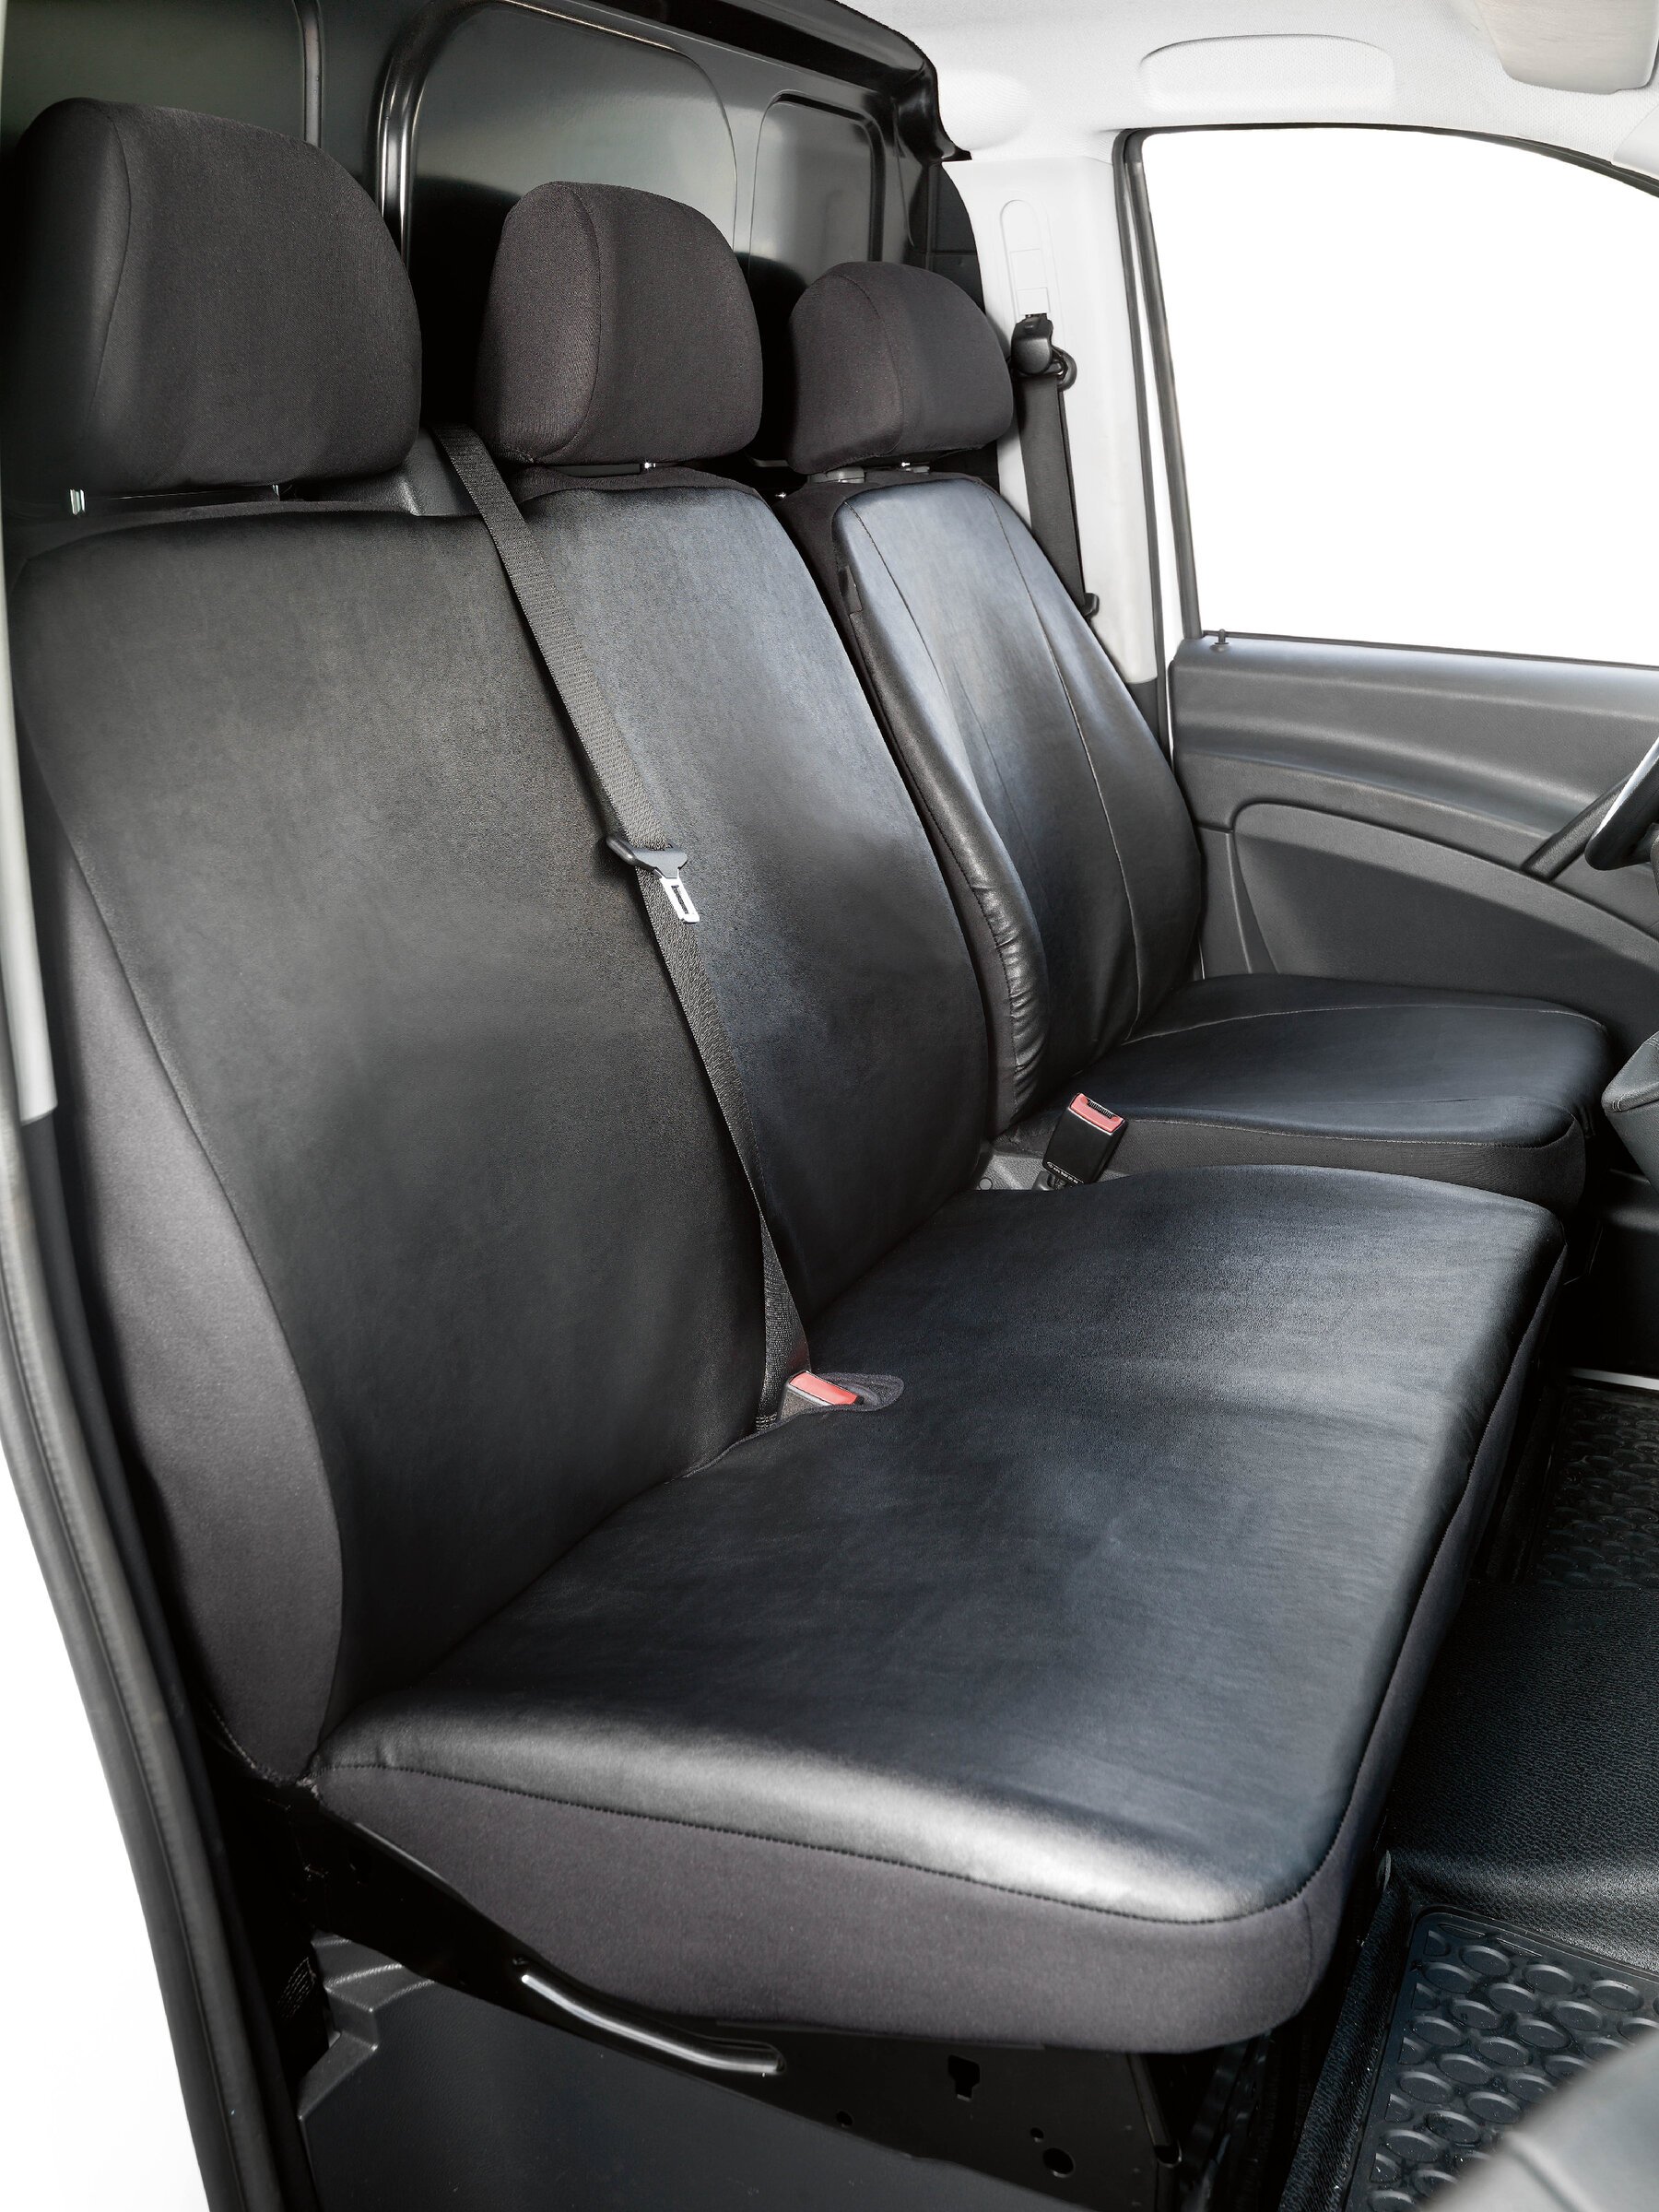 Housse de siège Transporter en simili cuir pour Mercedes-Benz Viano/Vito, siège simple